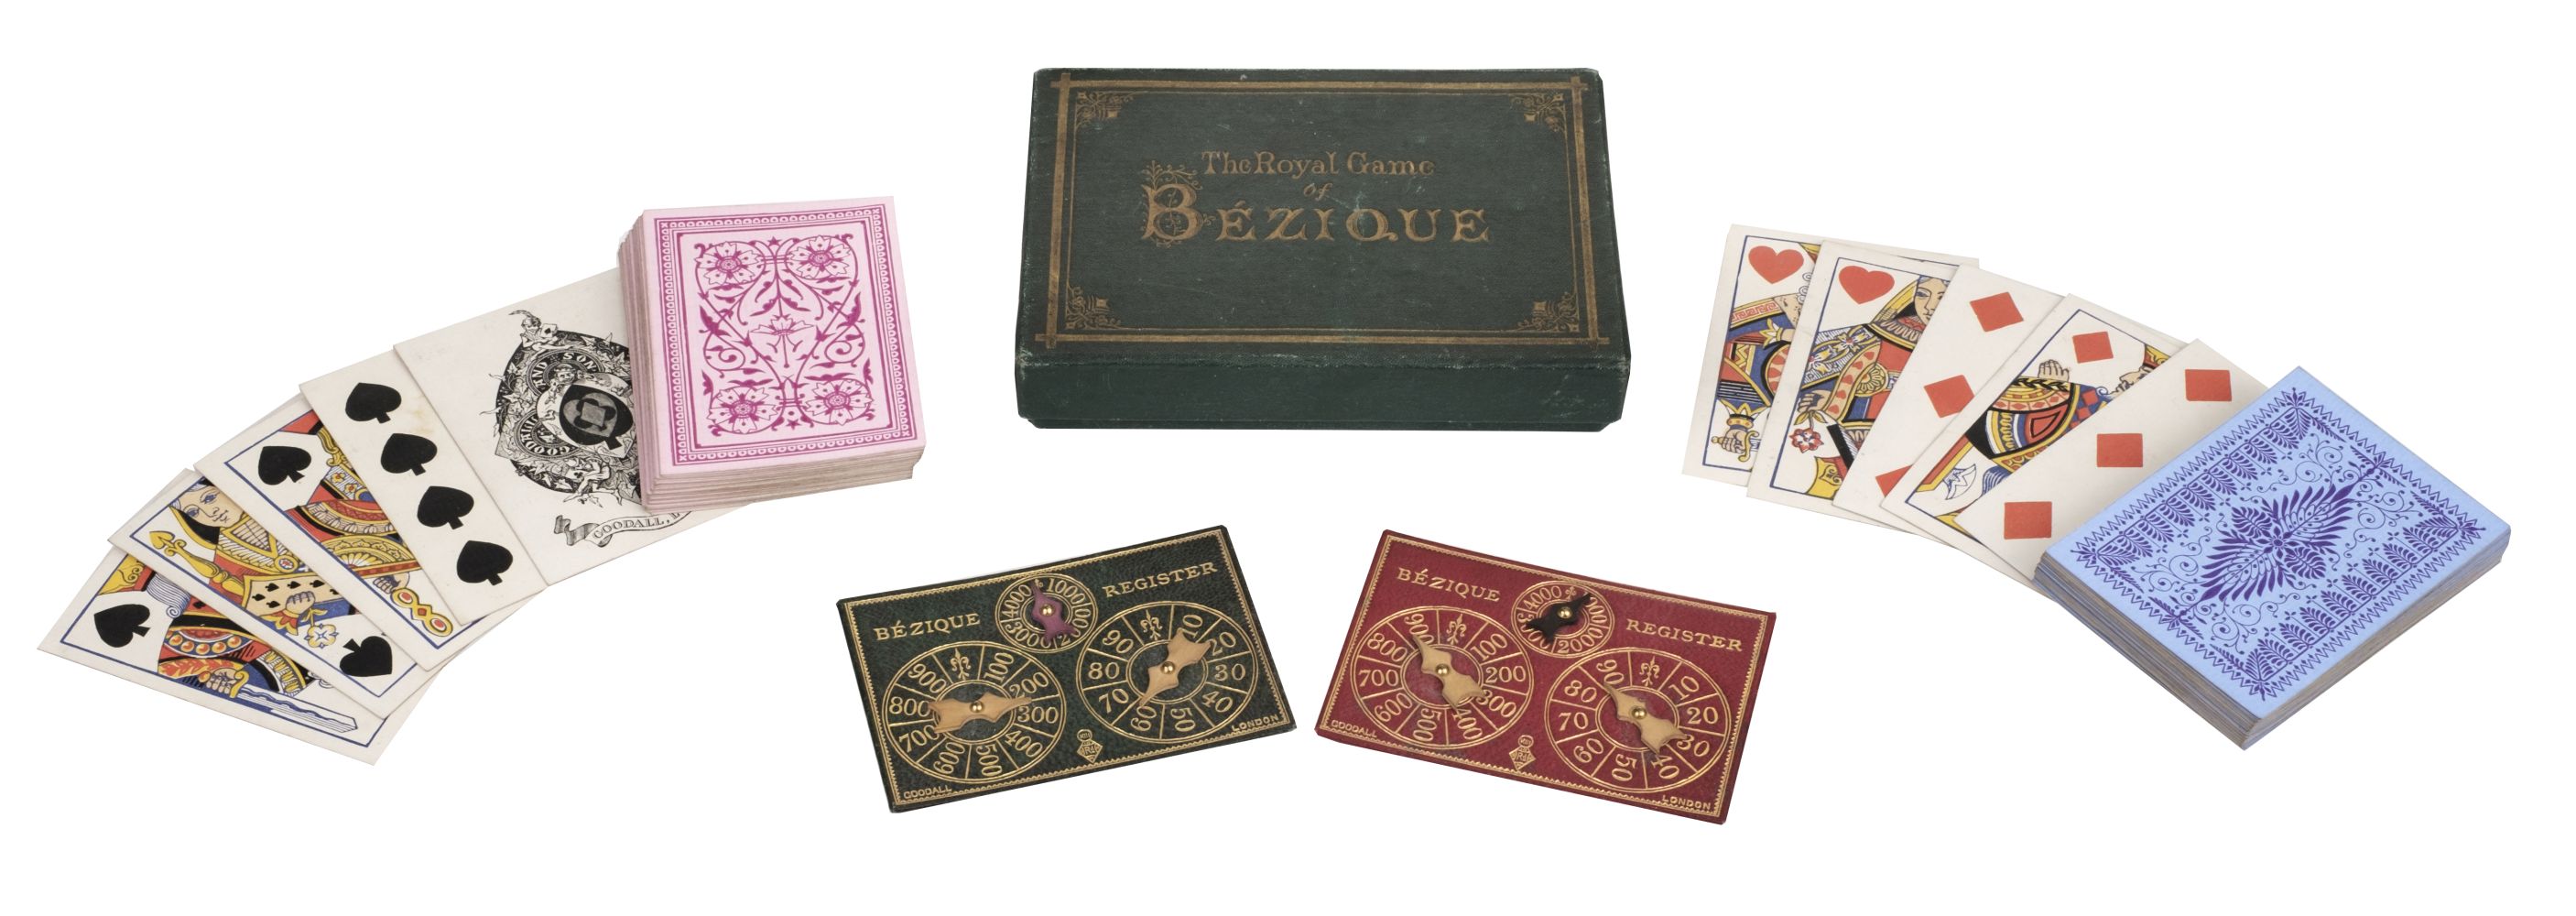 Bézique. The Royal Game of Bézique, London: C. Goodall & Son, 1863